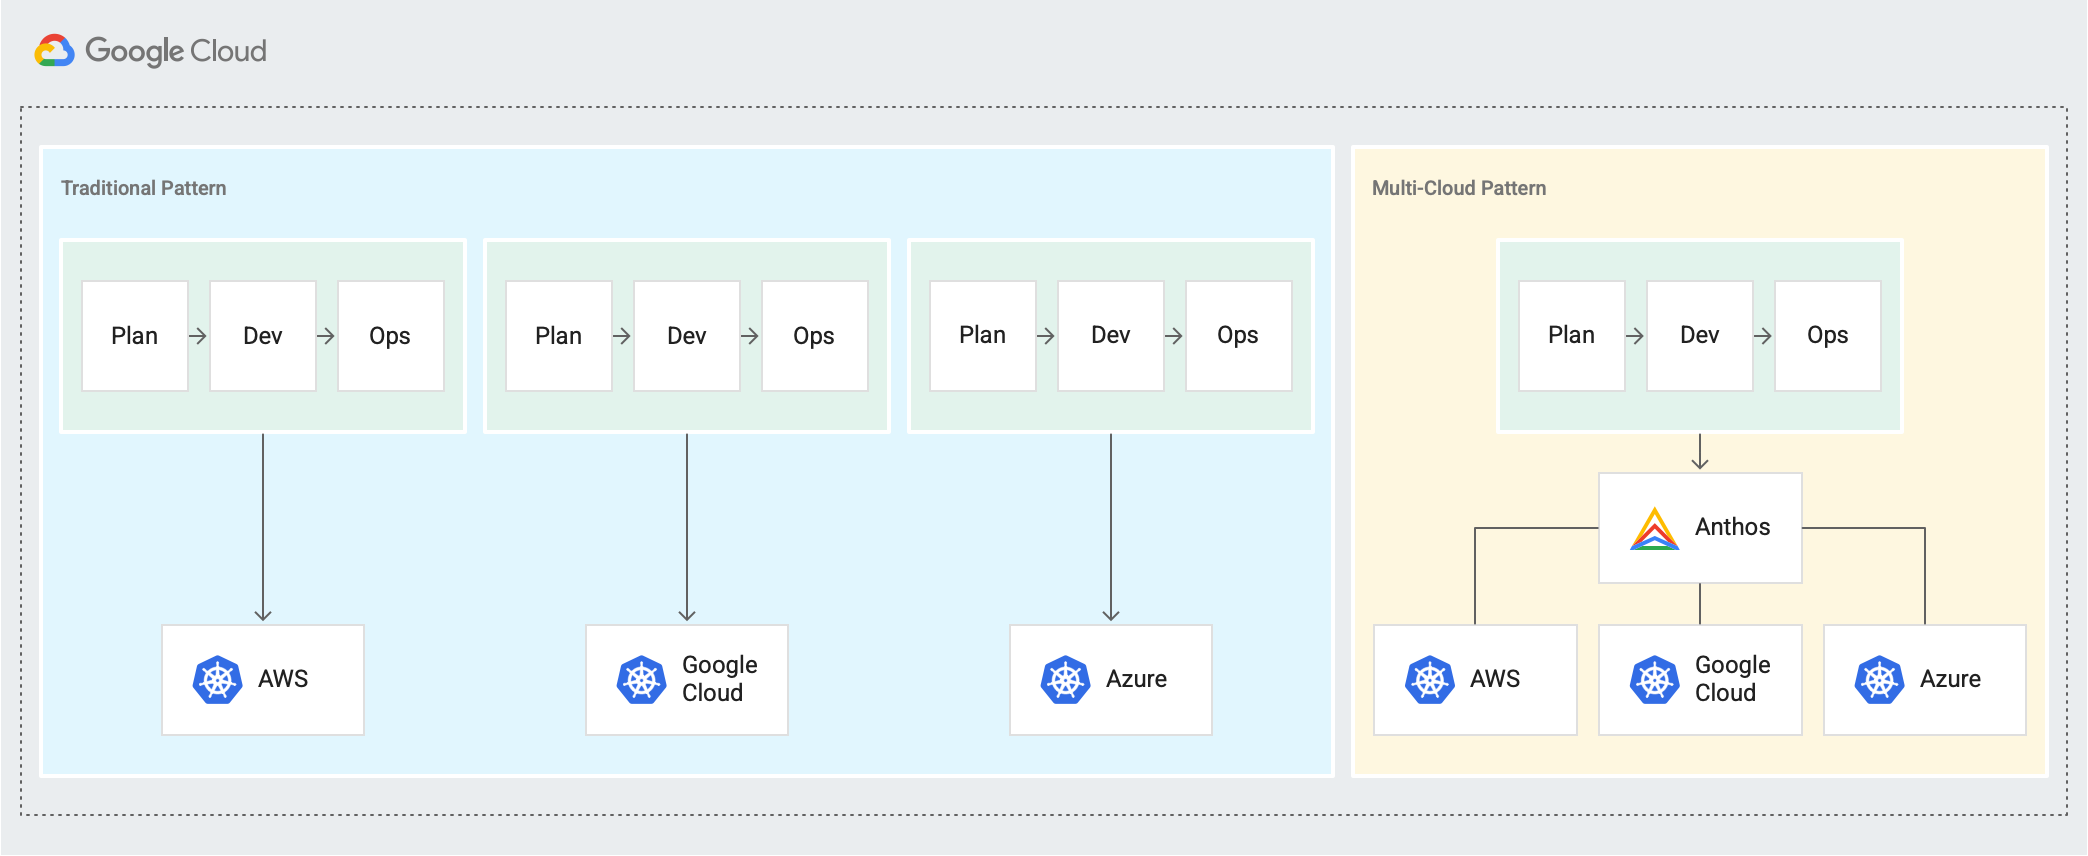 AWS、Google Cloud、Azure の個別の - 開発 → 運用サイクルの従来のパターンと、Anthos を介して計画 → 開発 → 運用サイクルが接続された新しいマルチクラウド パターンを示しています。